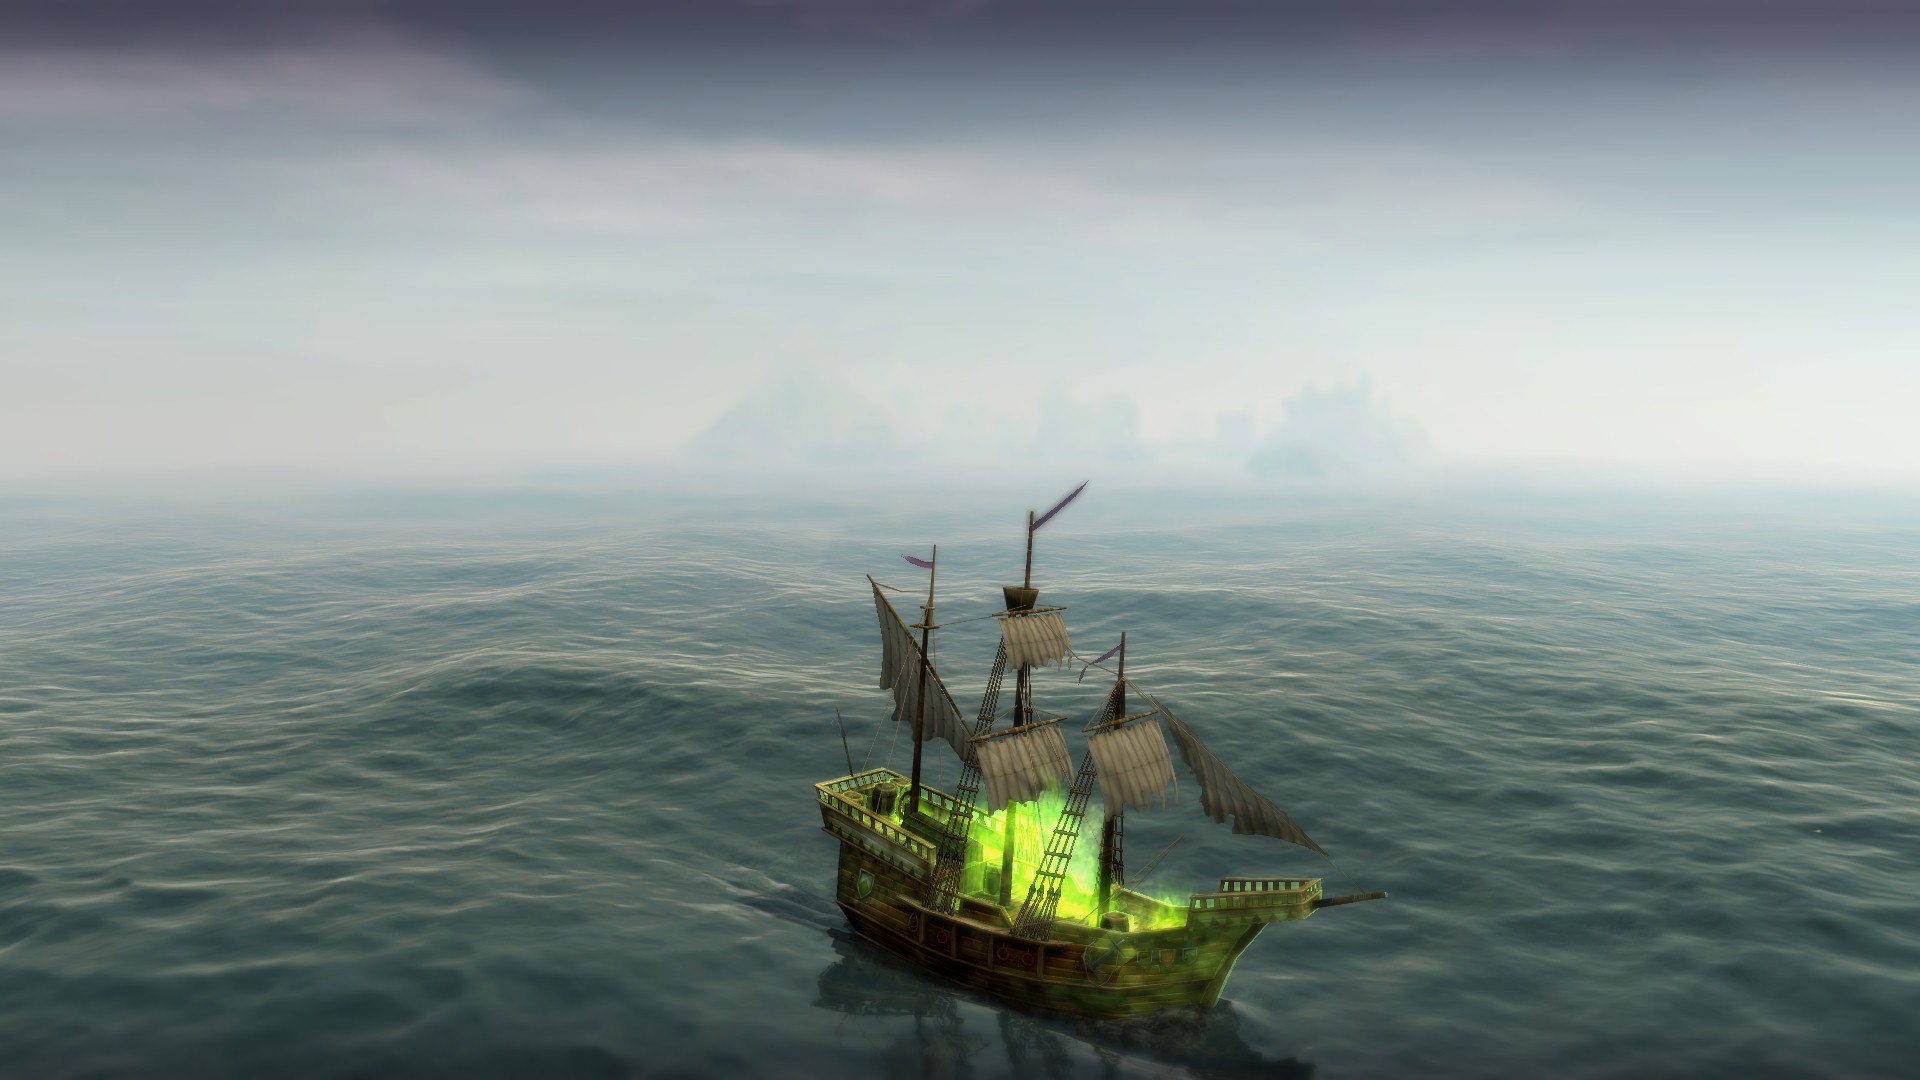 anno 1404 capture ship